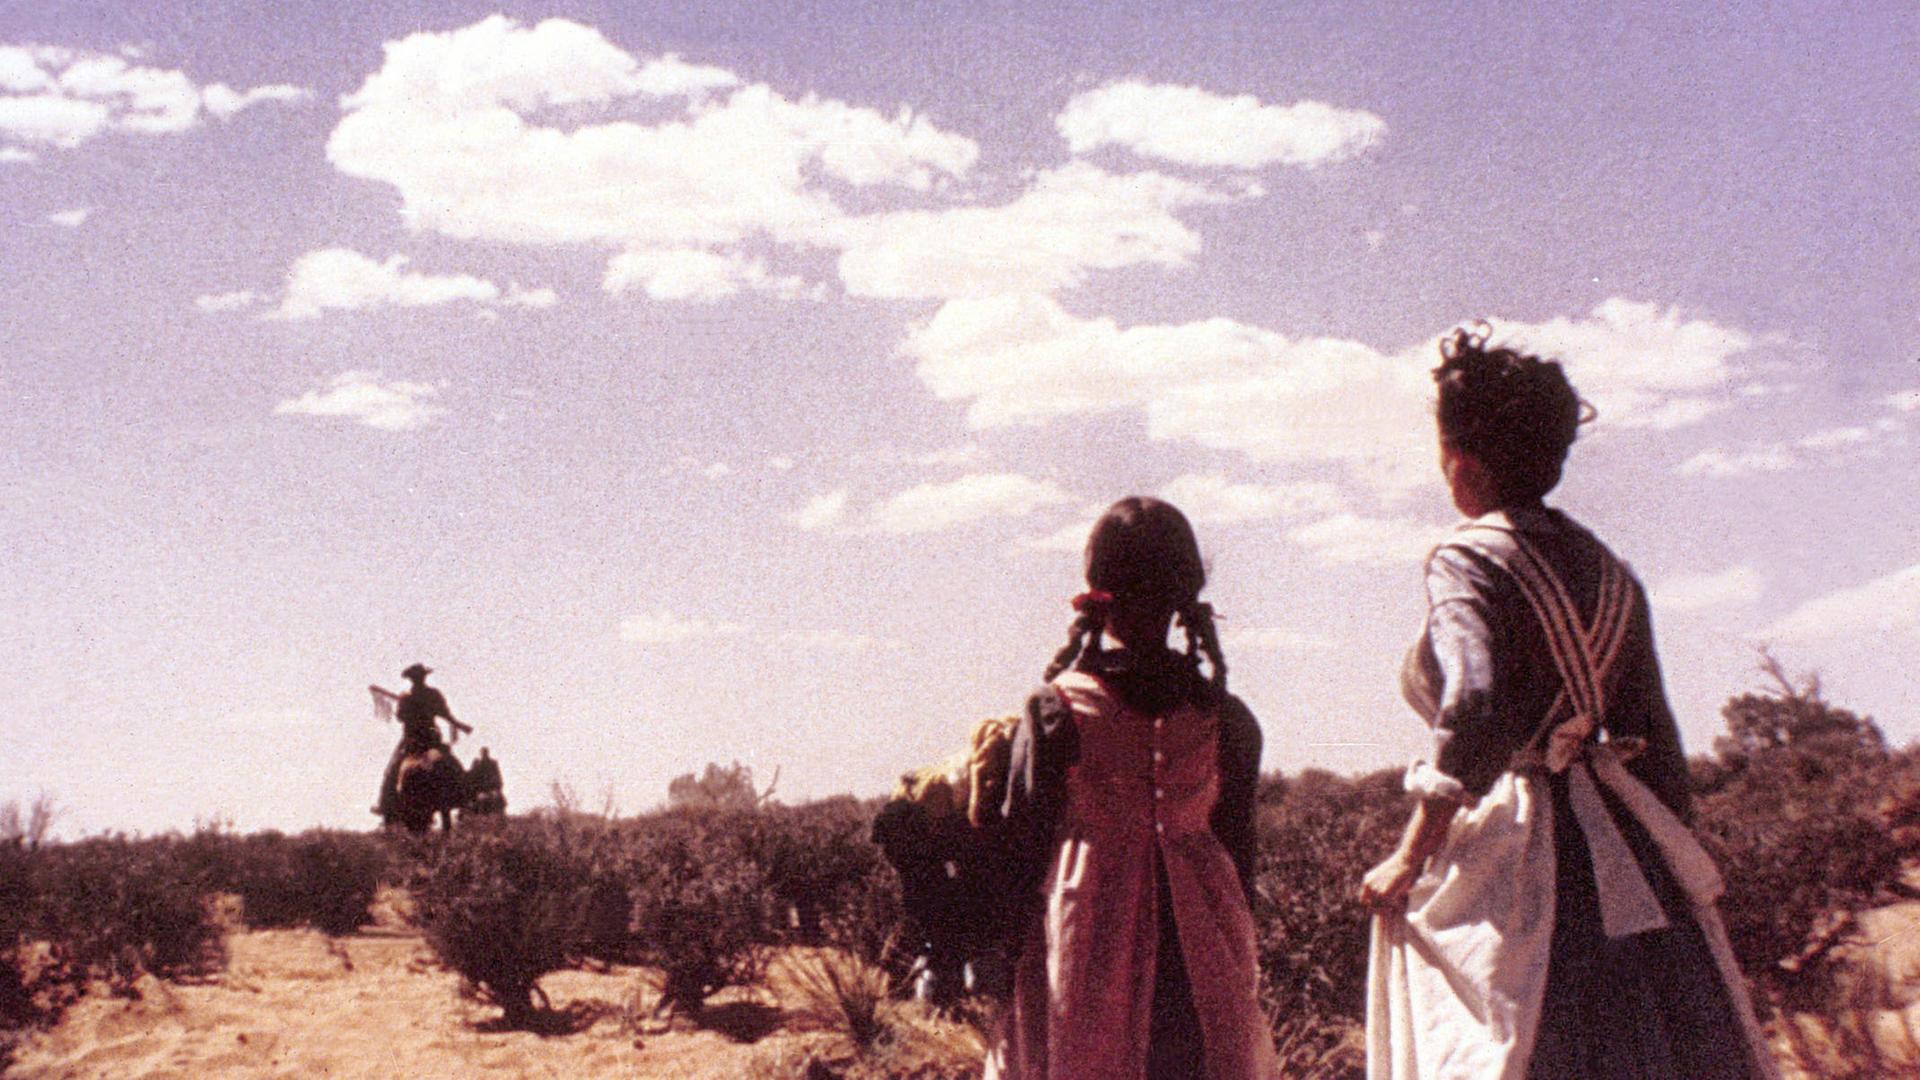 Immer wieder übel: Abschied, so wie hier in unserem Top-Five-Film "The Searchers" mit John Wayne. Im Vordergrund stehen zwei Frauen und winken, im Hintergrund reitet ein Cowboy aus dem Bild. 